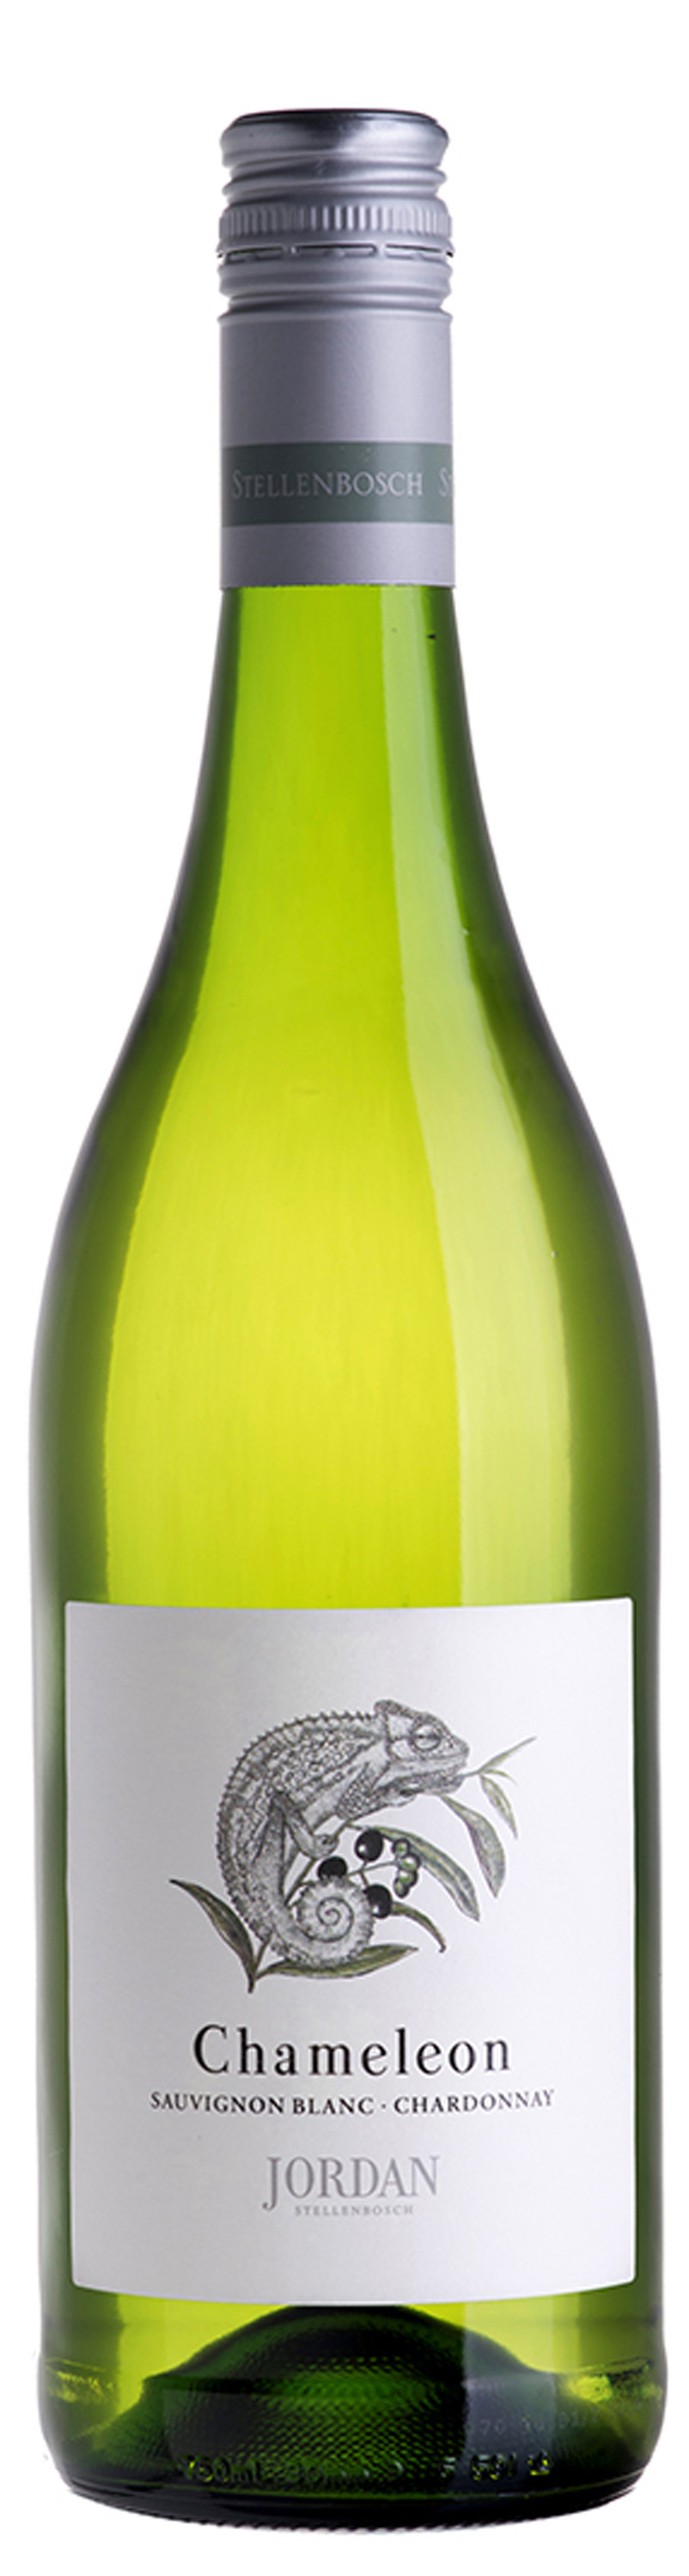 SA Jordan Chameleon Sauvignon Blanc Chardonnay2017 NEW